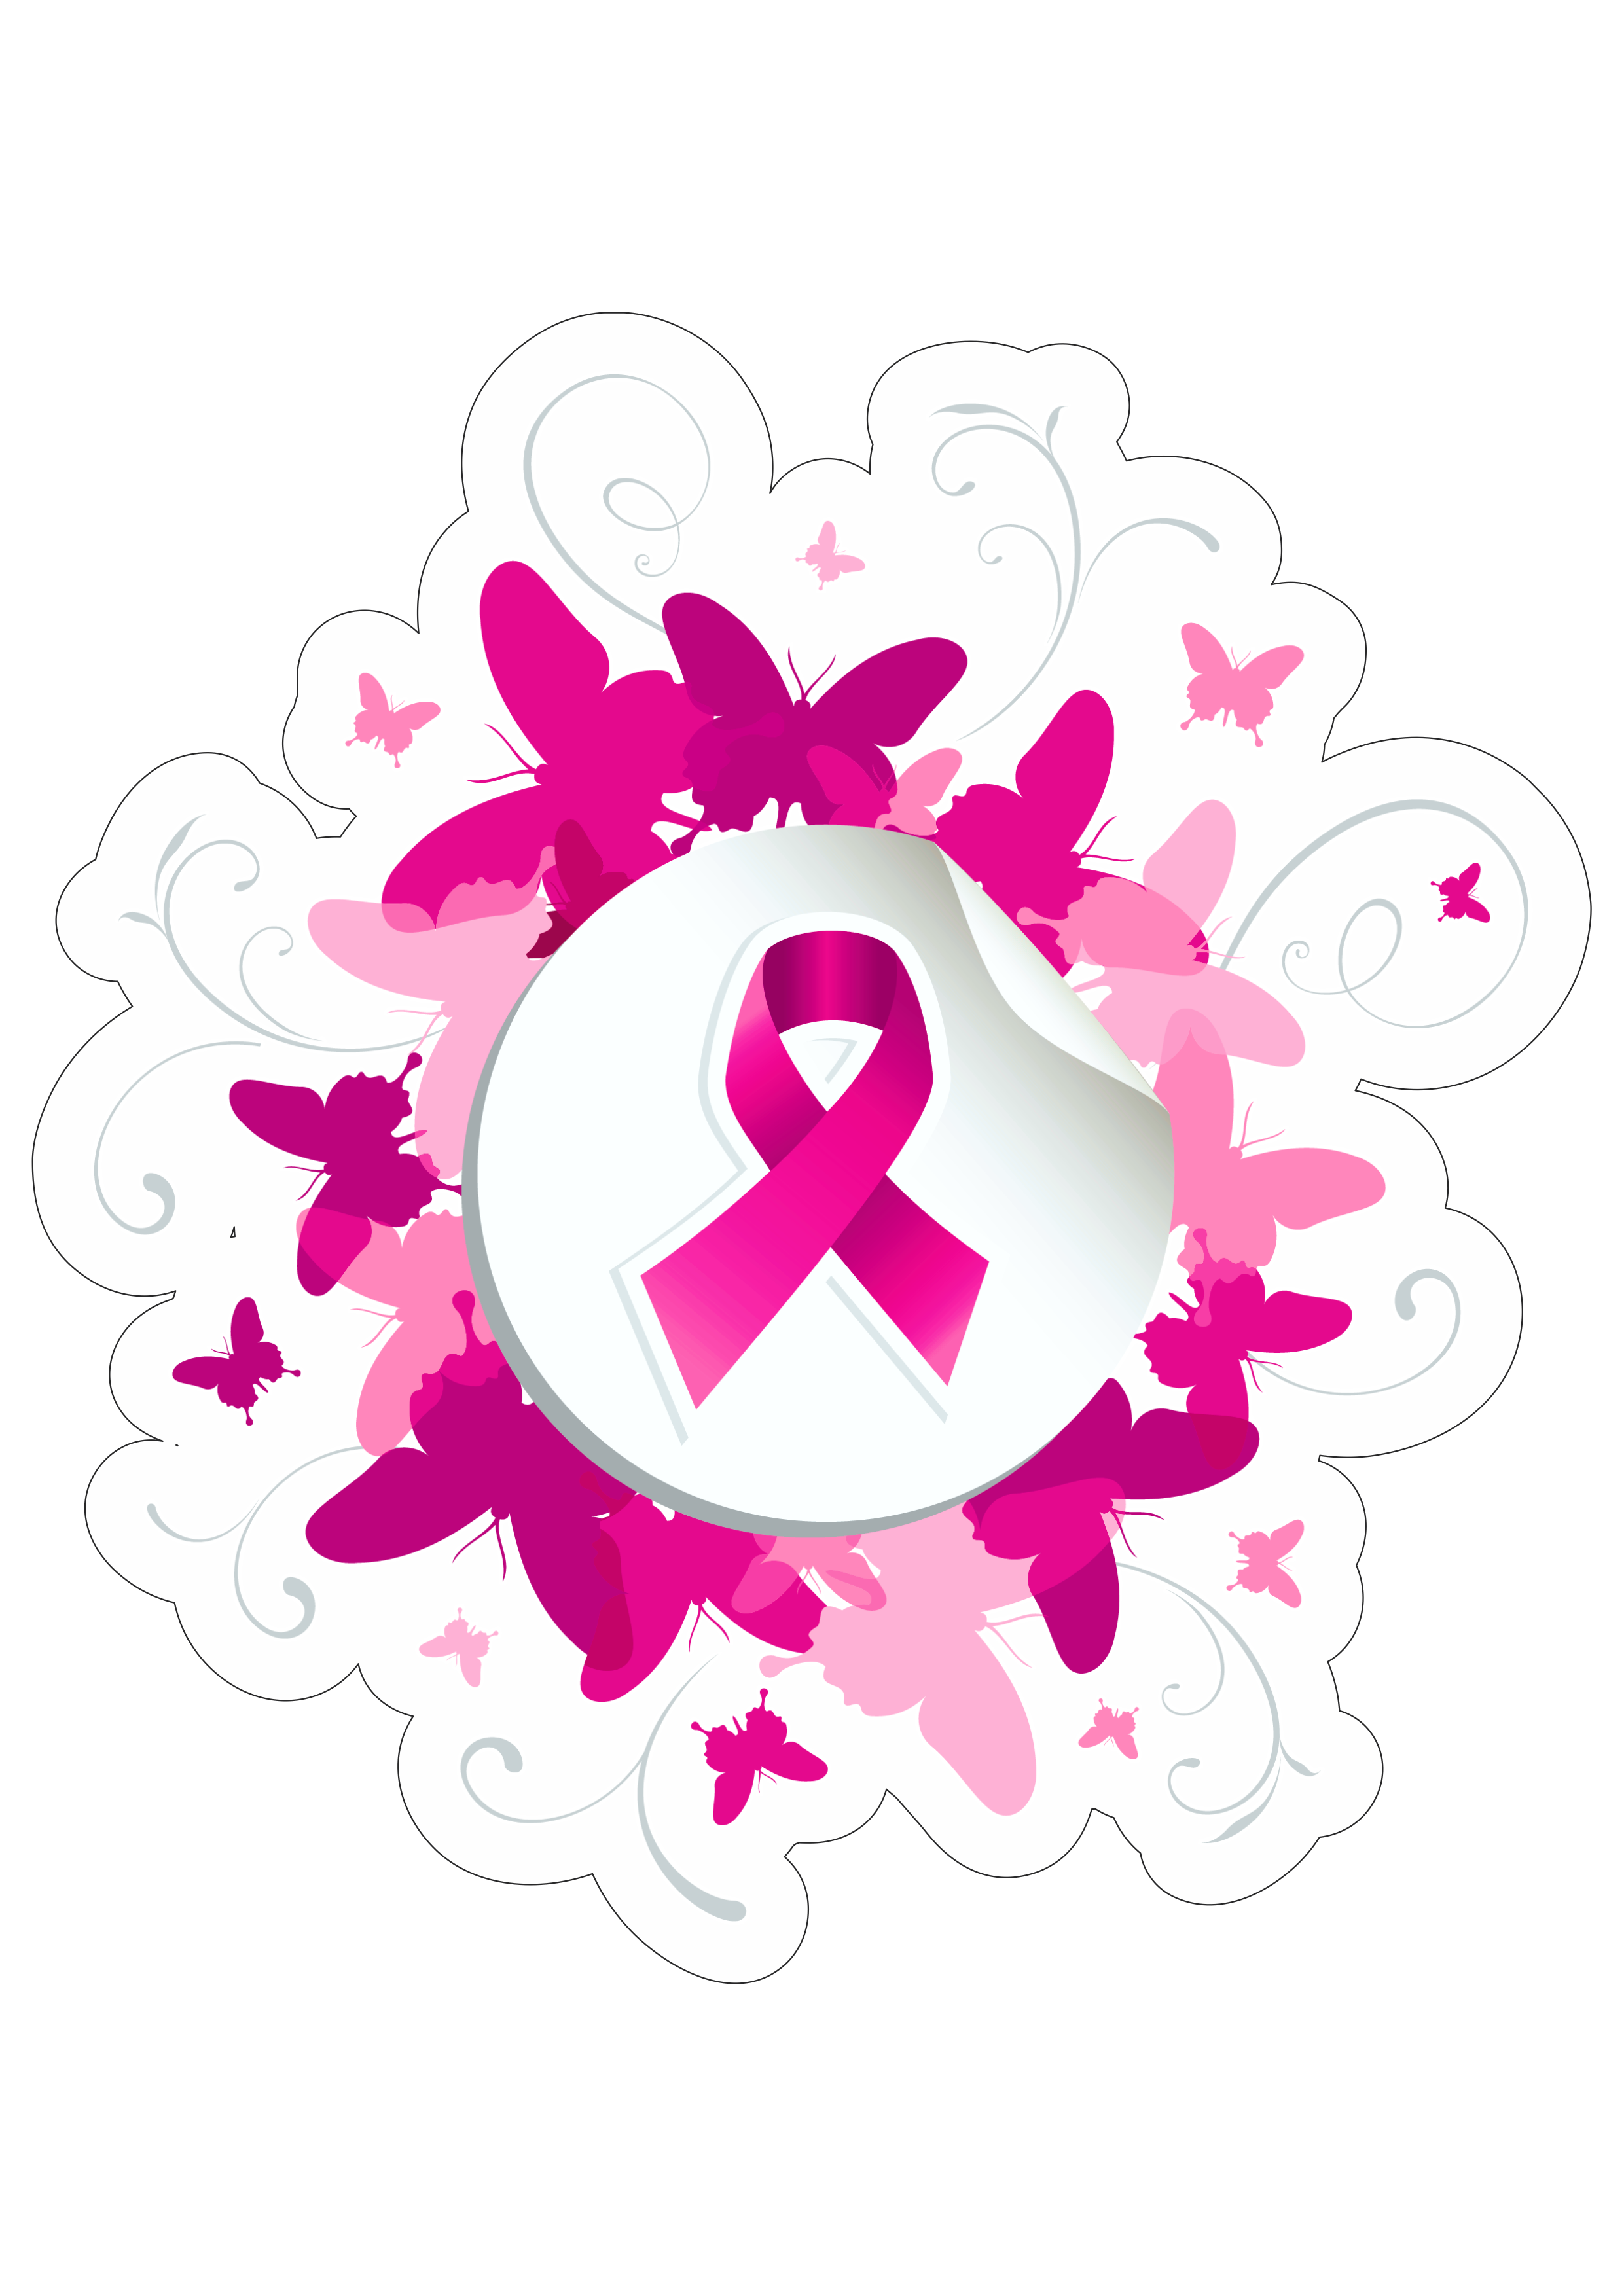 Outubro rosa mês de prevenção ao câncer de mama lacinho de fita campanha de conscientização logo png